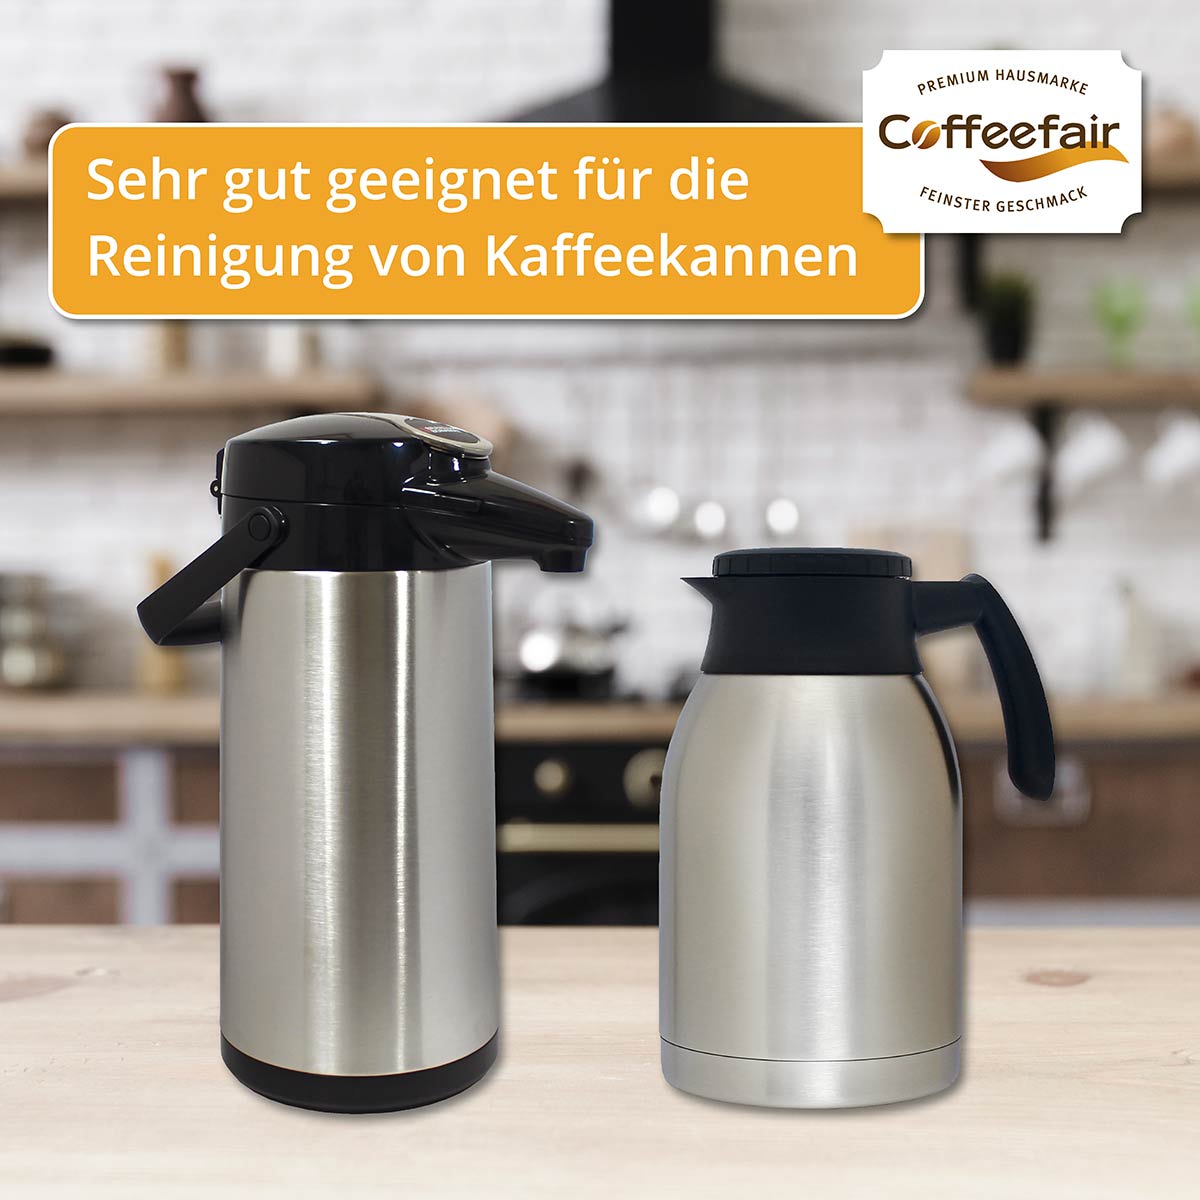 Coffeefair Cleaner Spezial-Reinigungspulver 100g Kannen-Reiniger